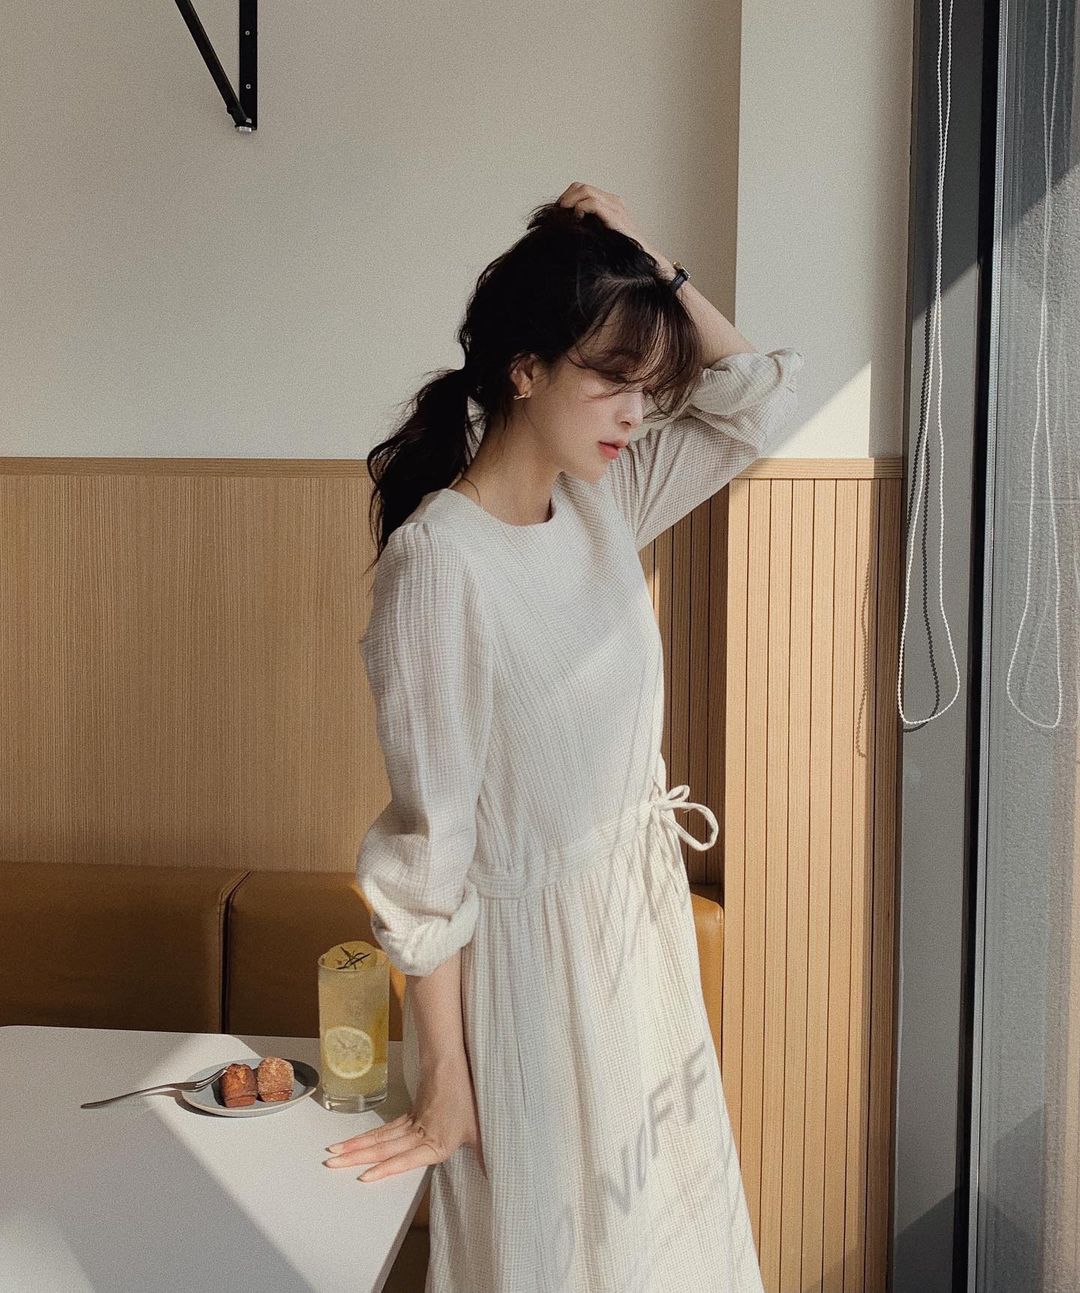 Hè đến là gái Hàn lại diện đủ kiểu váy trắng siêu trẻ xinh và tinh tế, xem mà muốn sắm cả 'lố' về nhà - Ảnh 15